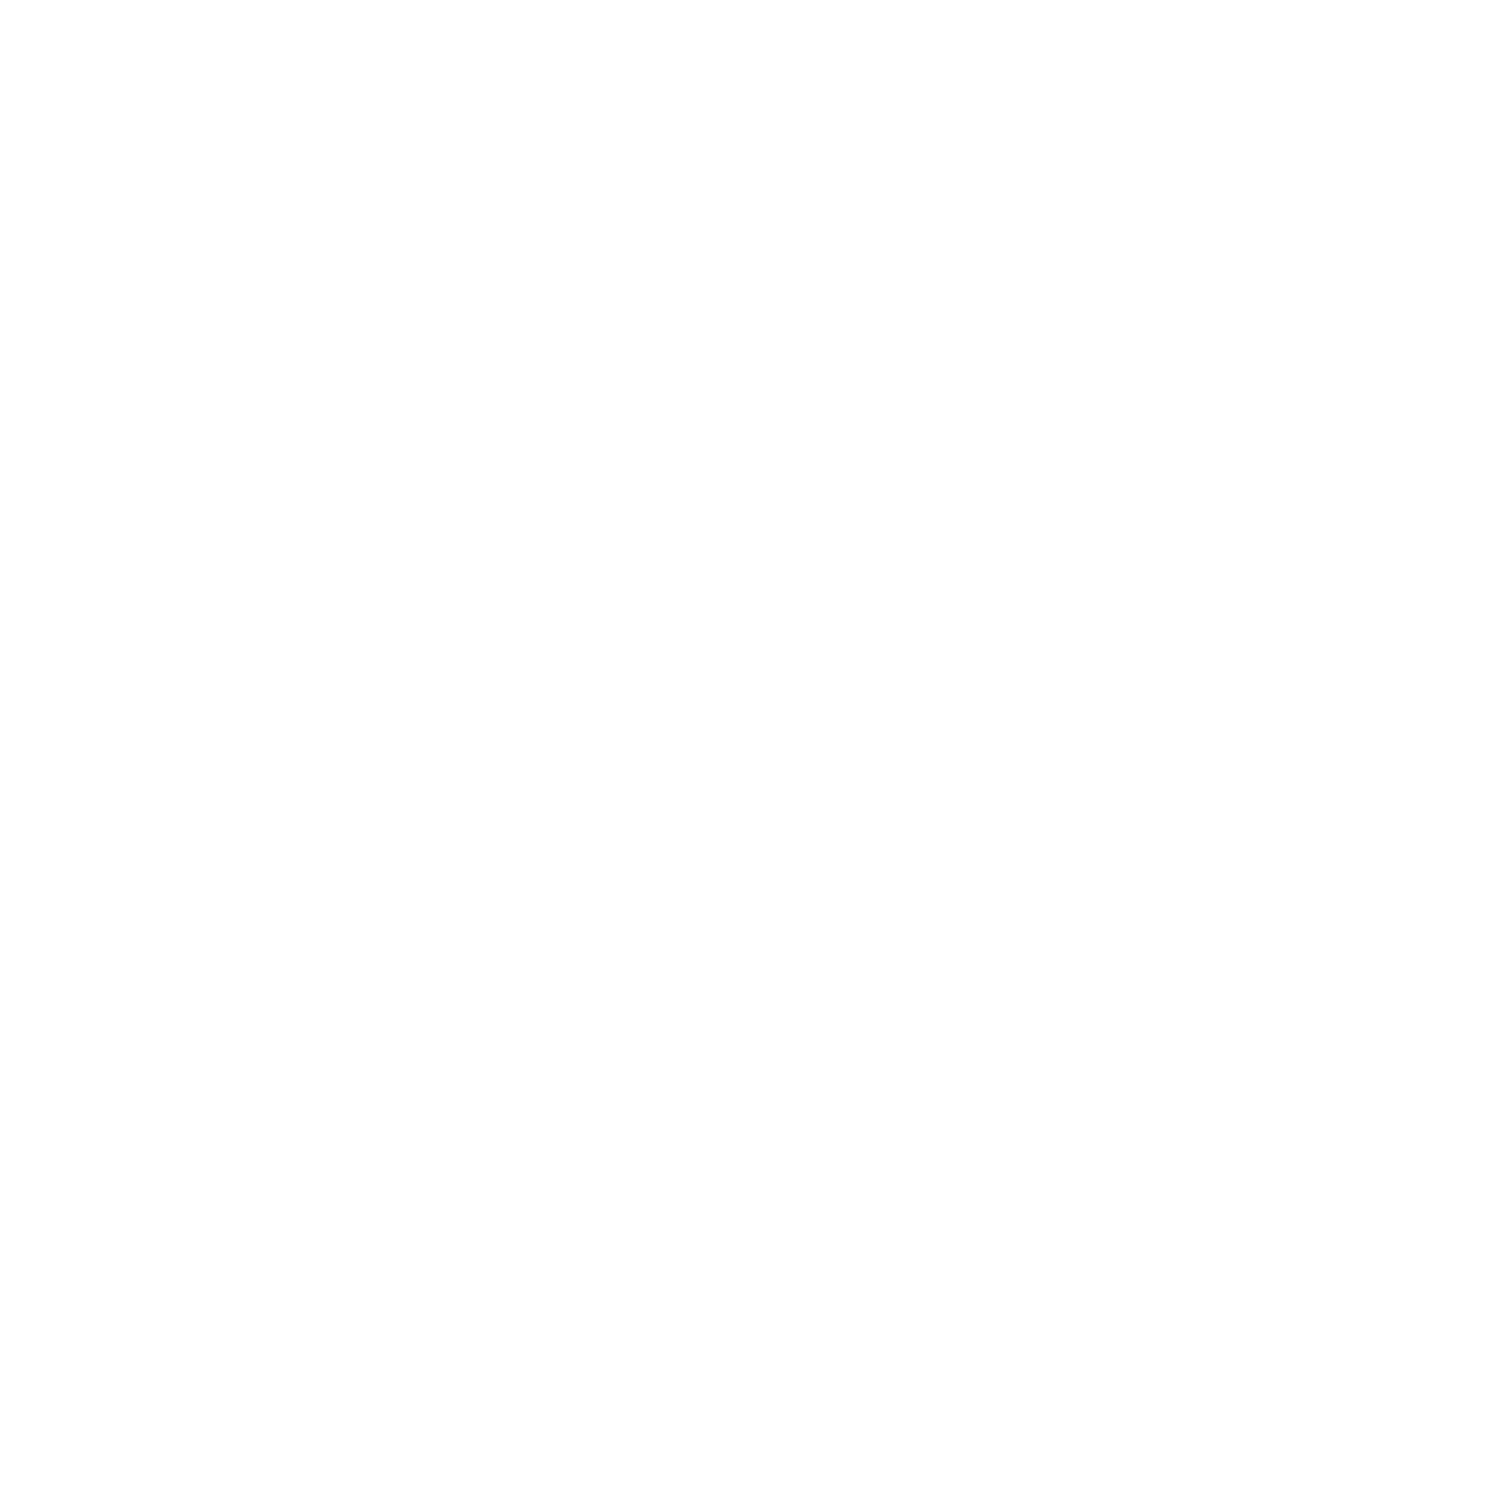 La Planète